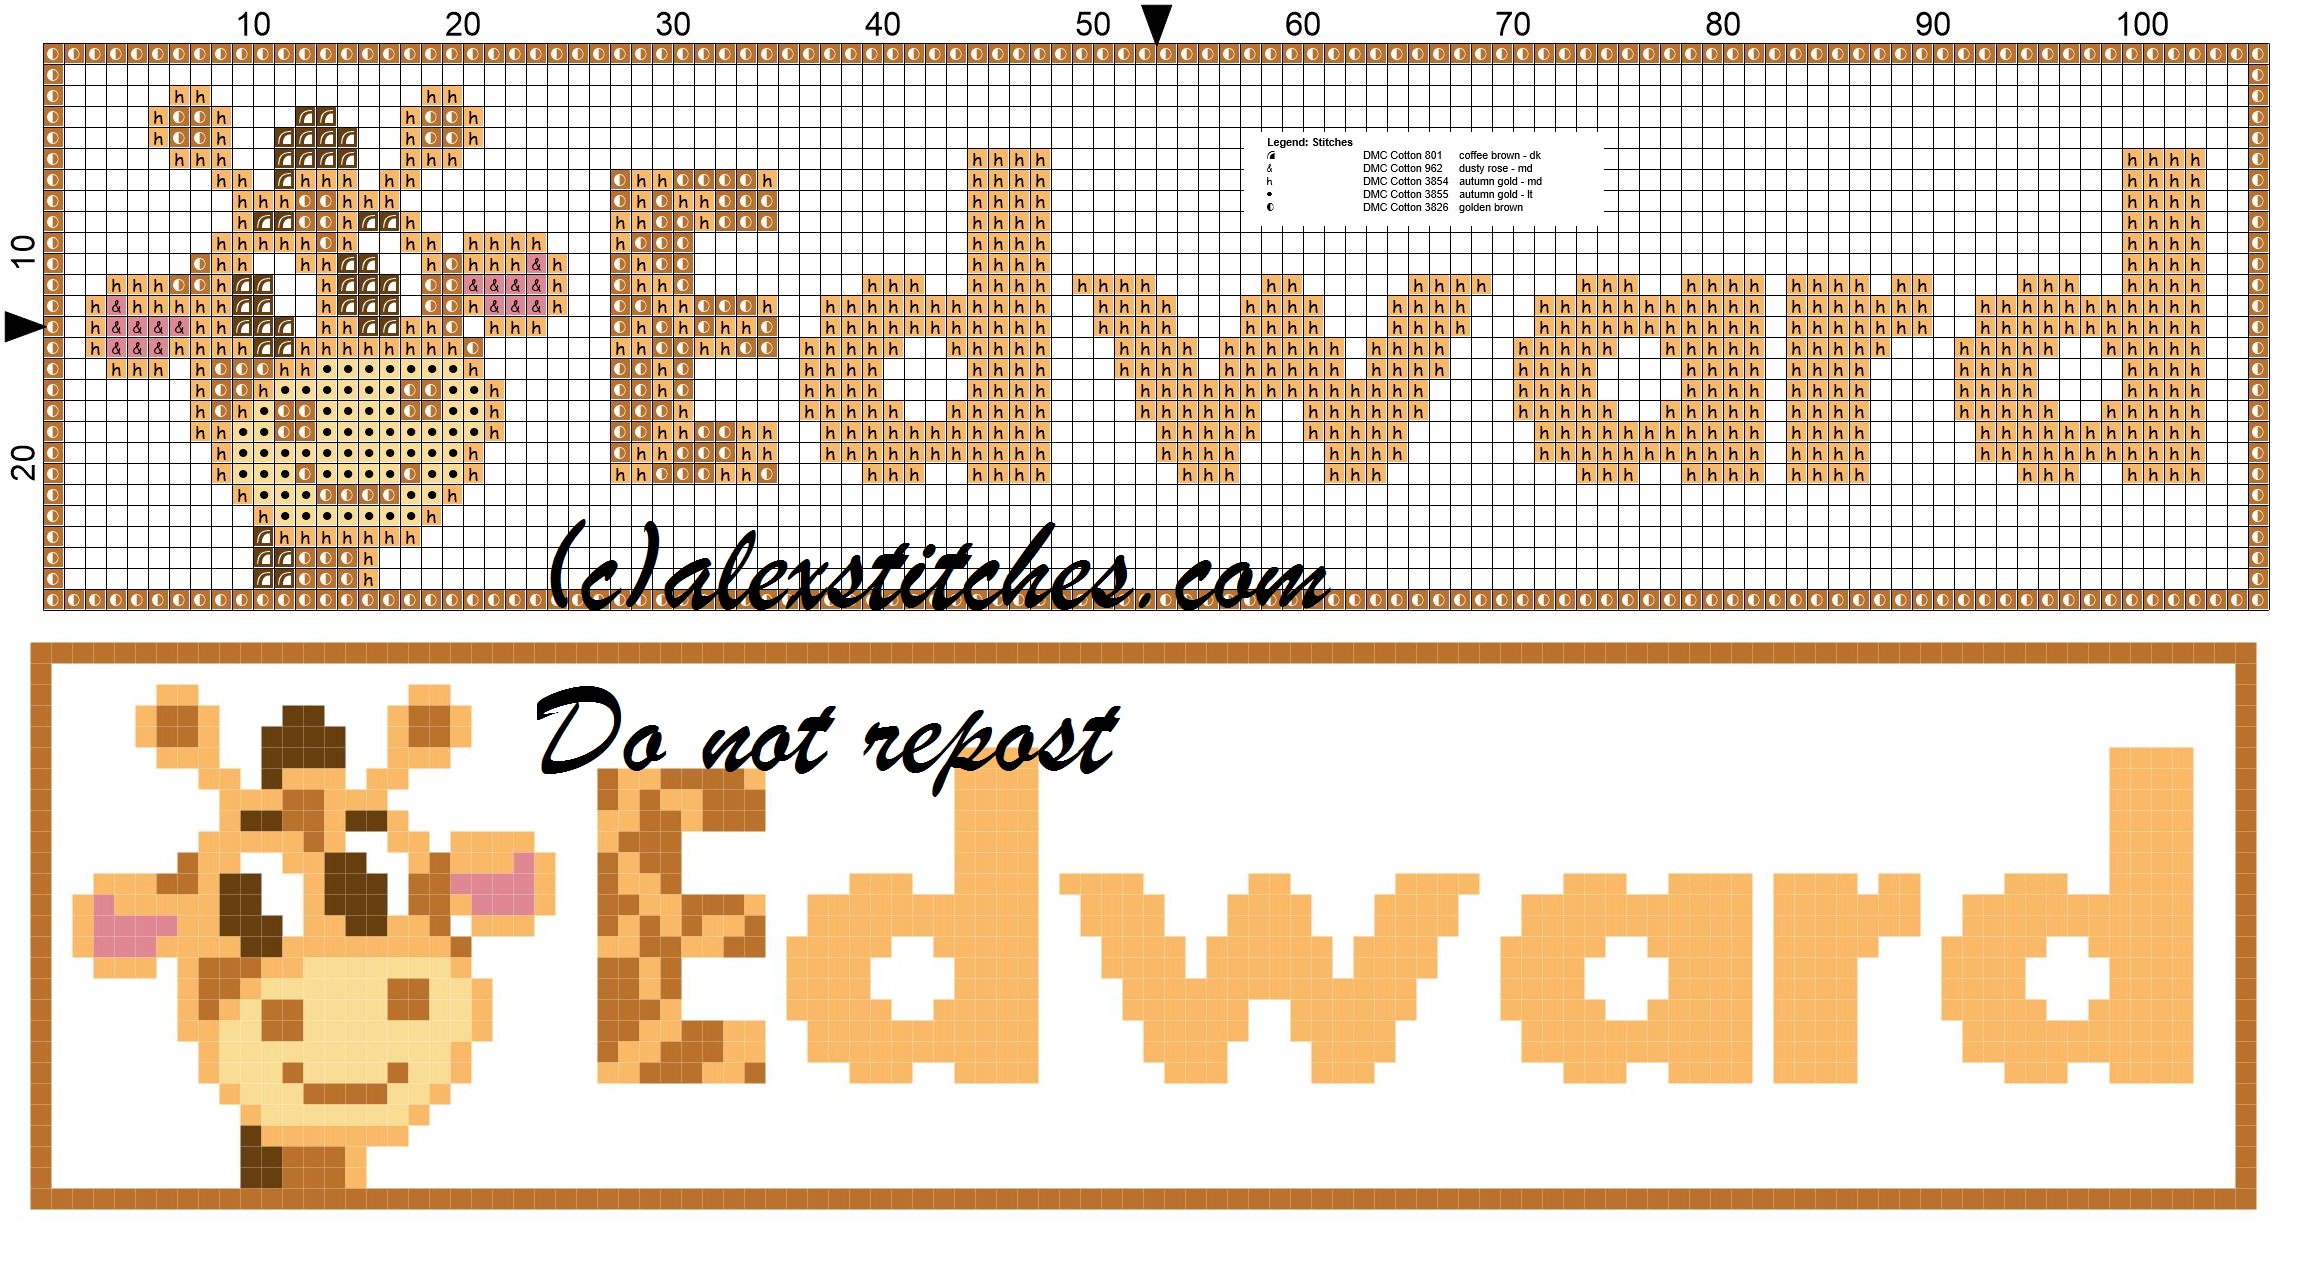 Edward name with giraffe cross stitch pattern